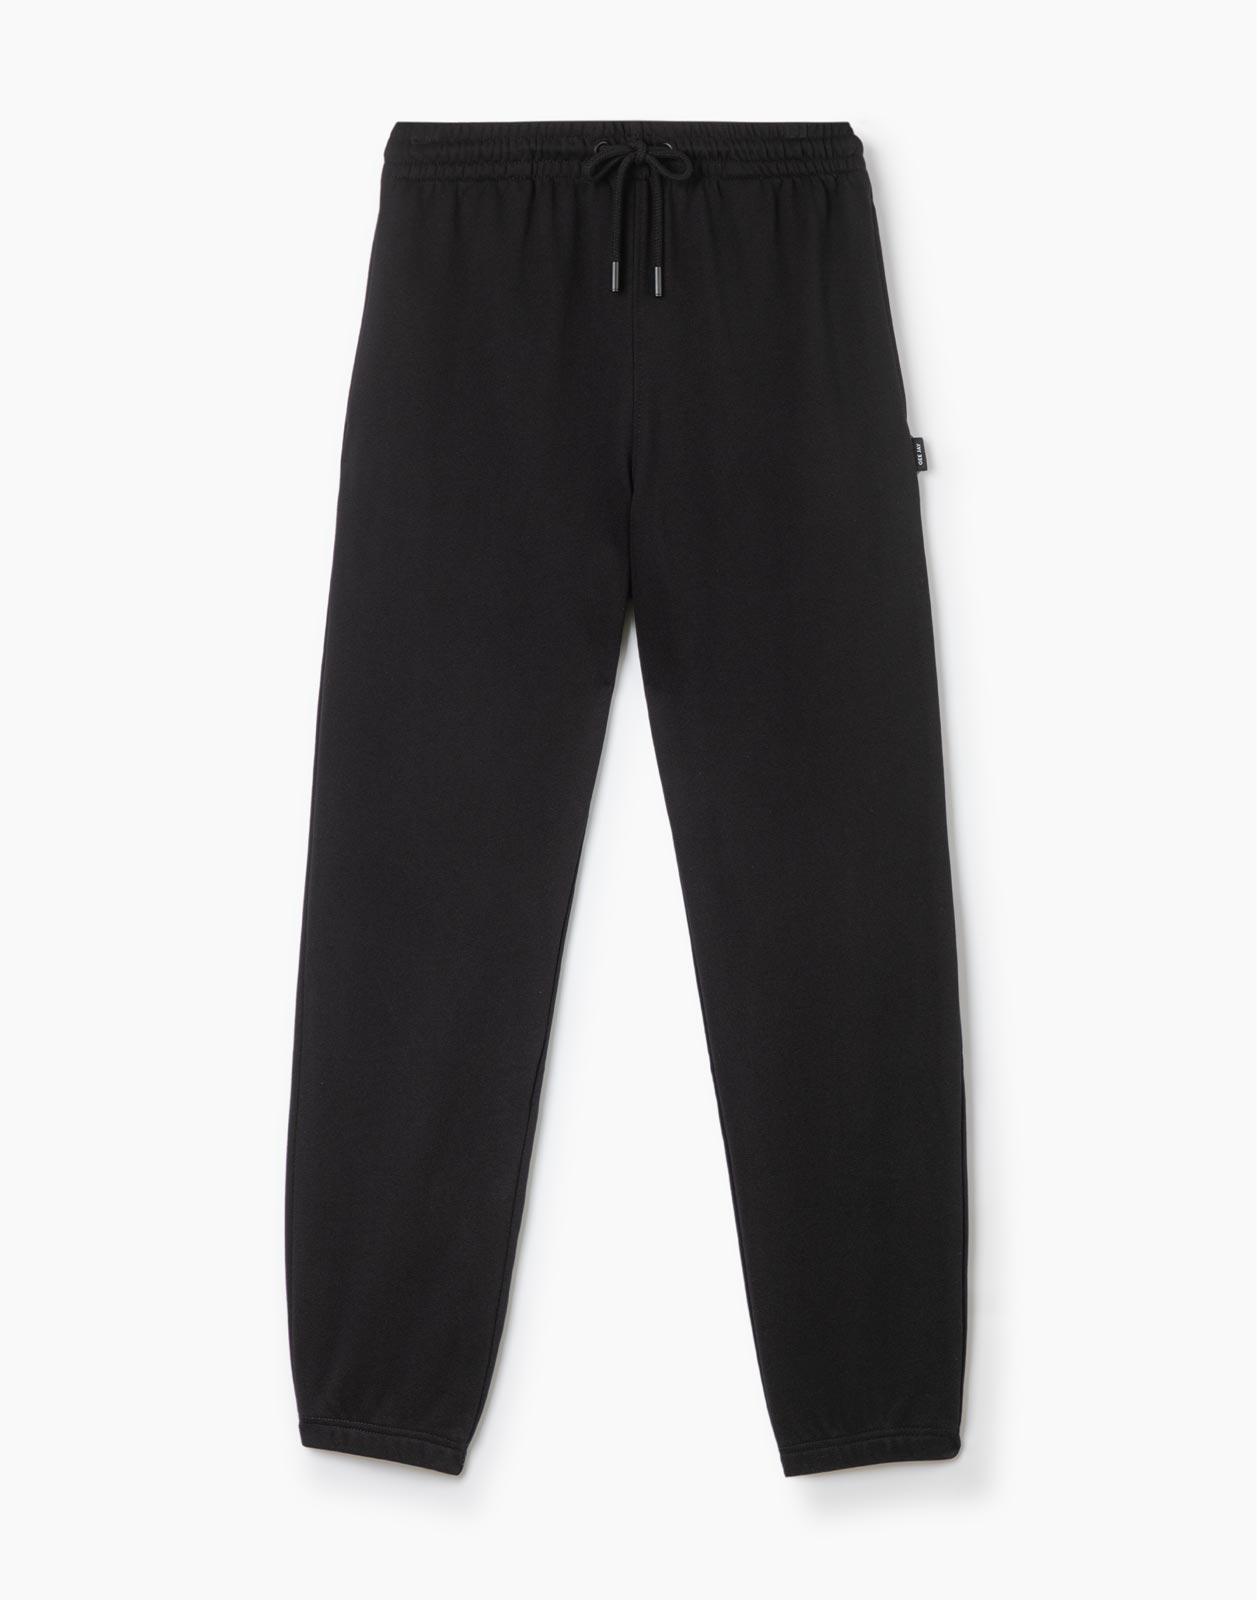 Спортивные брюки мужские Gloria Jeans BAC011399 черные 2XL/182